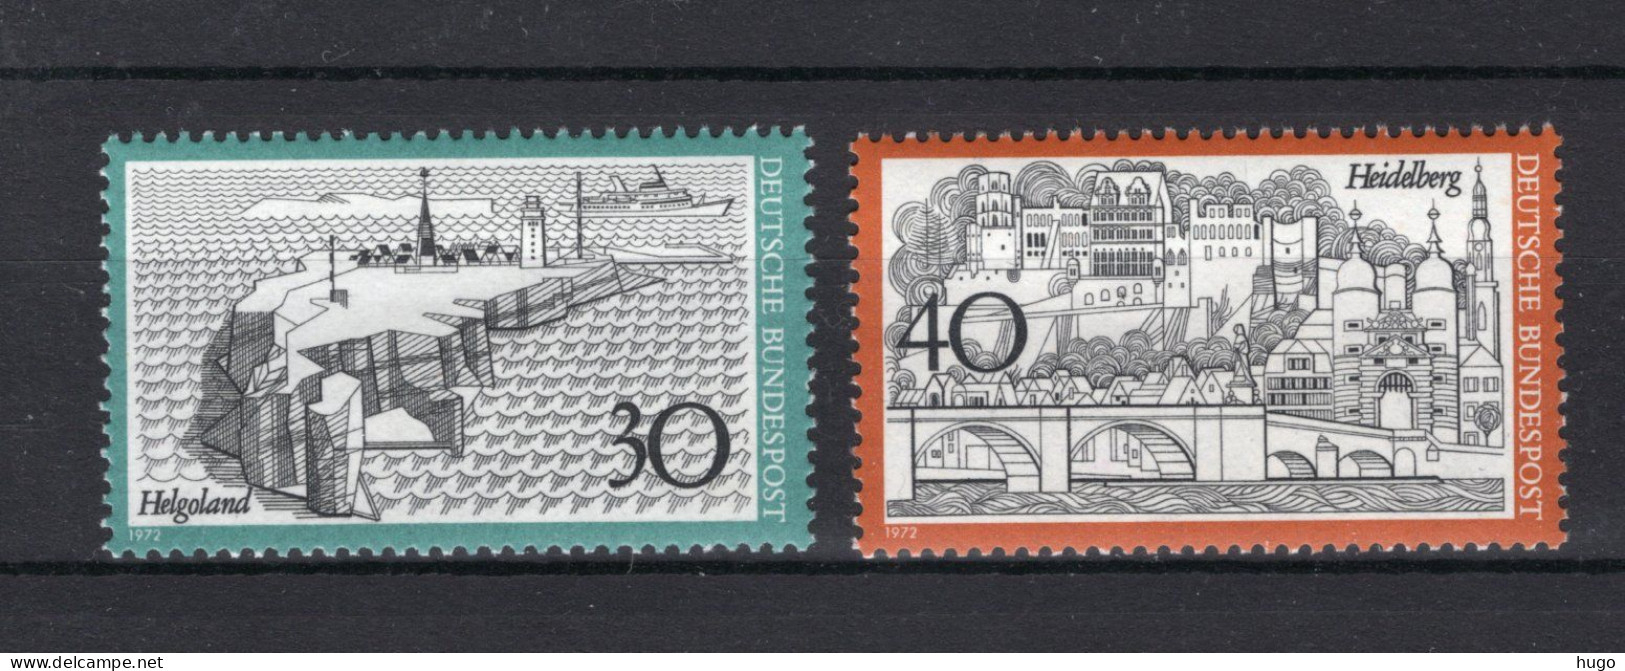 DUITSLAND Yt. 596/597 MNH 1972 - Unused Stamps